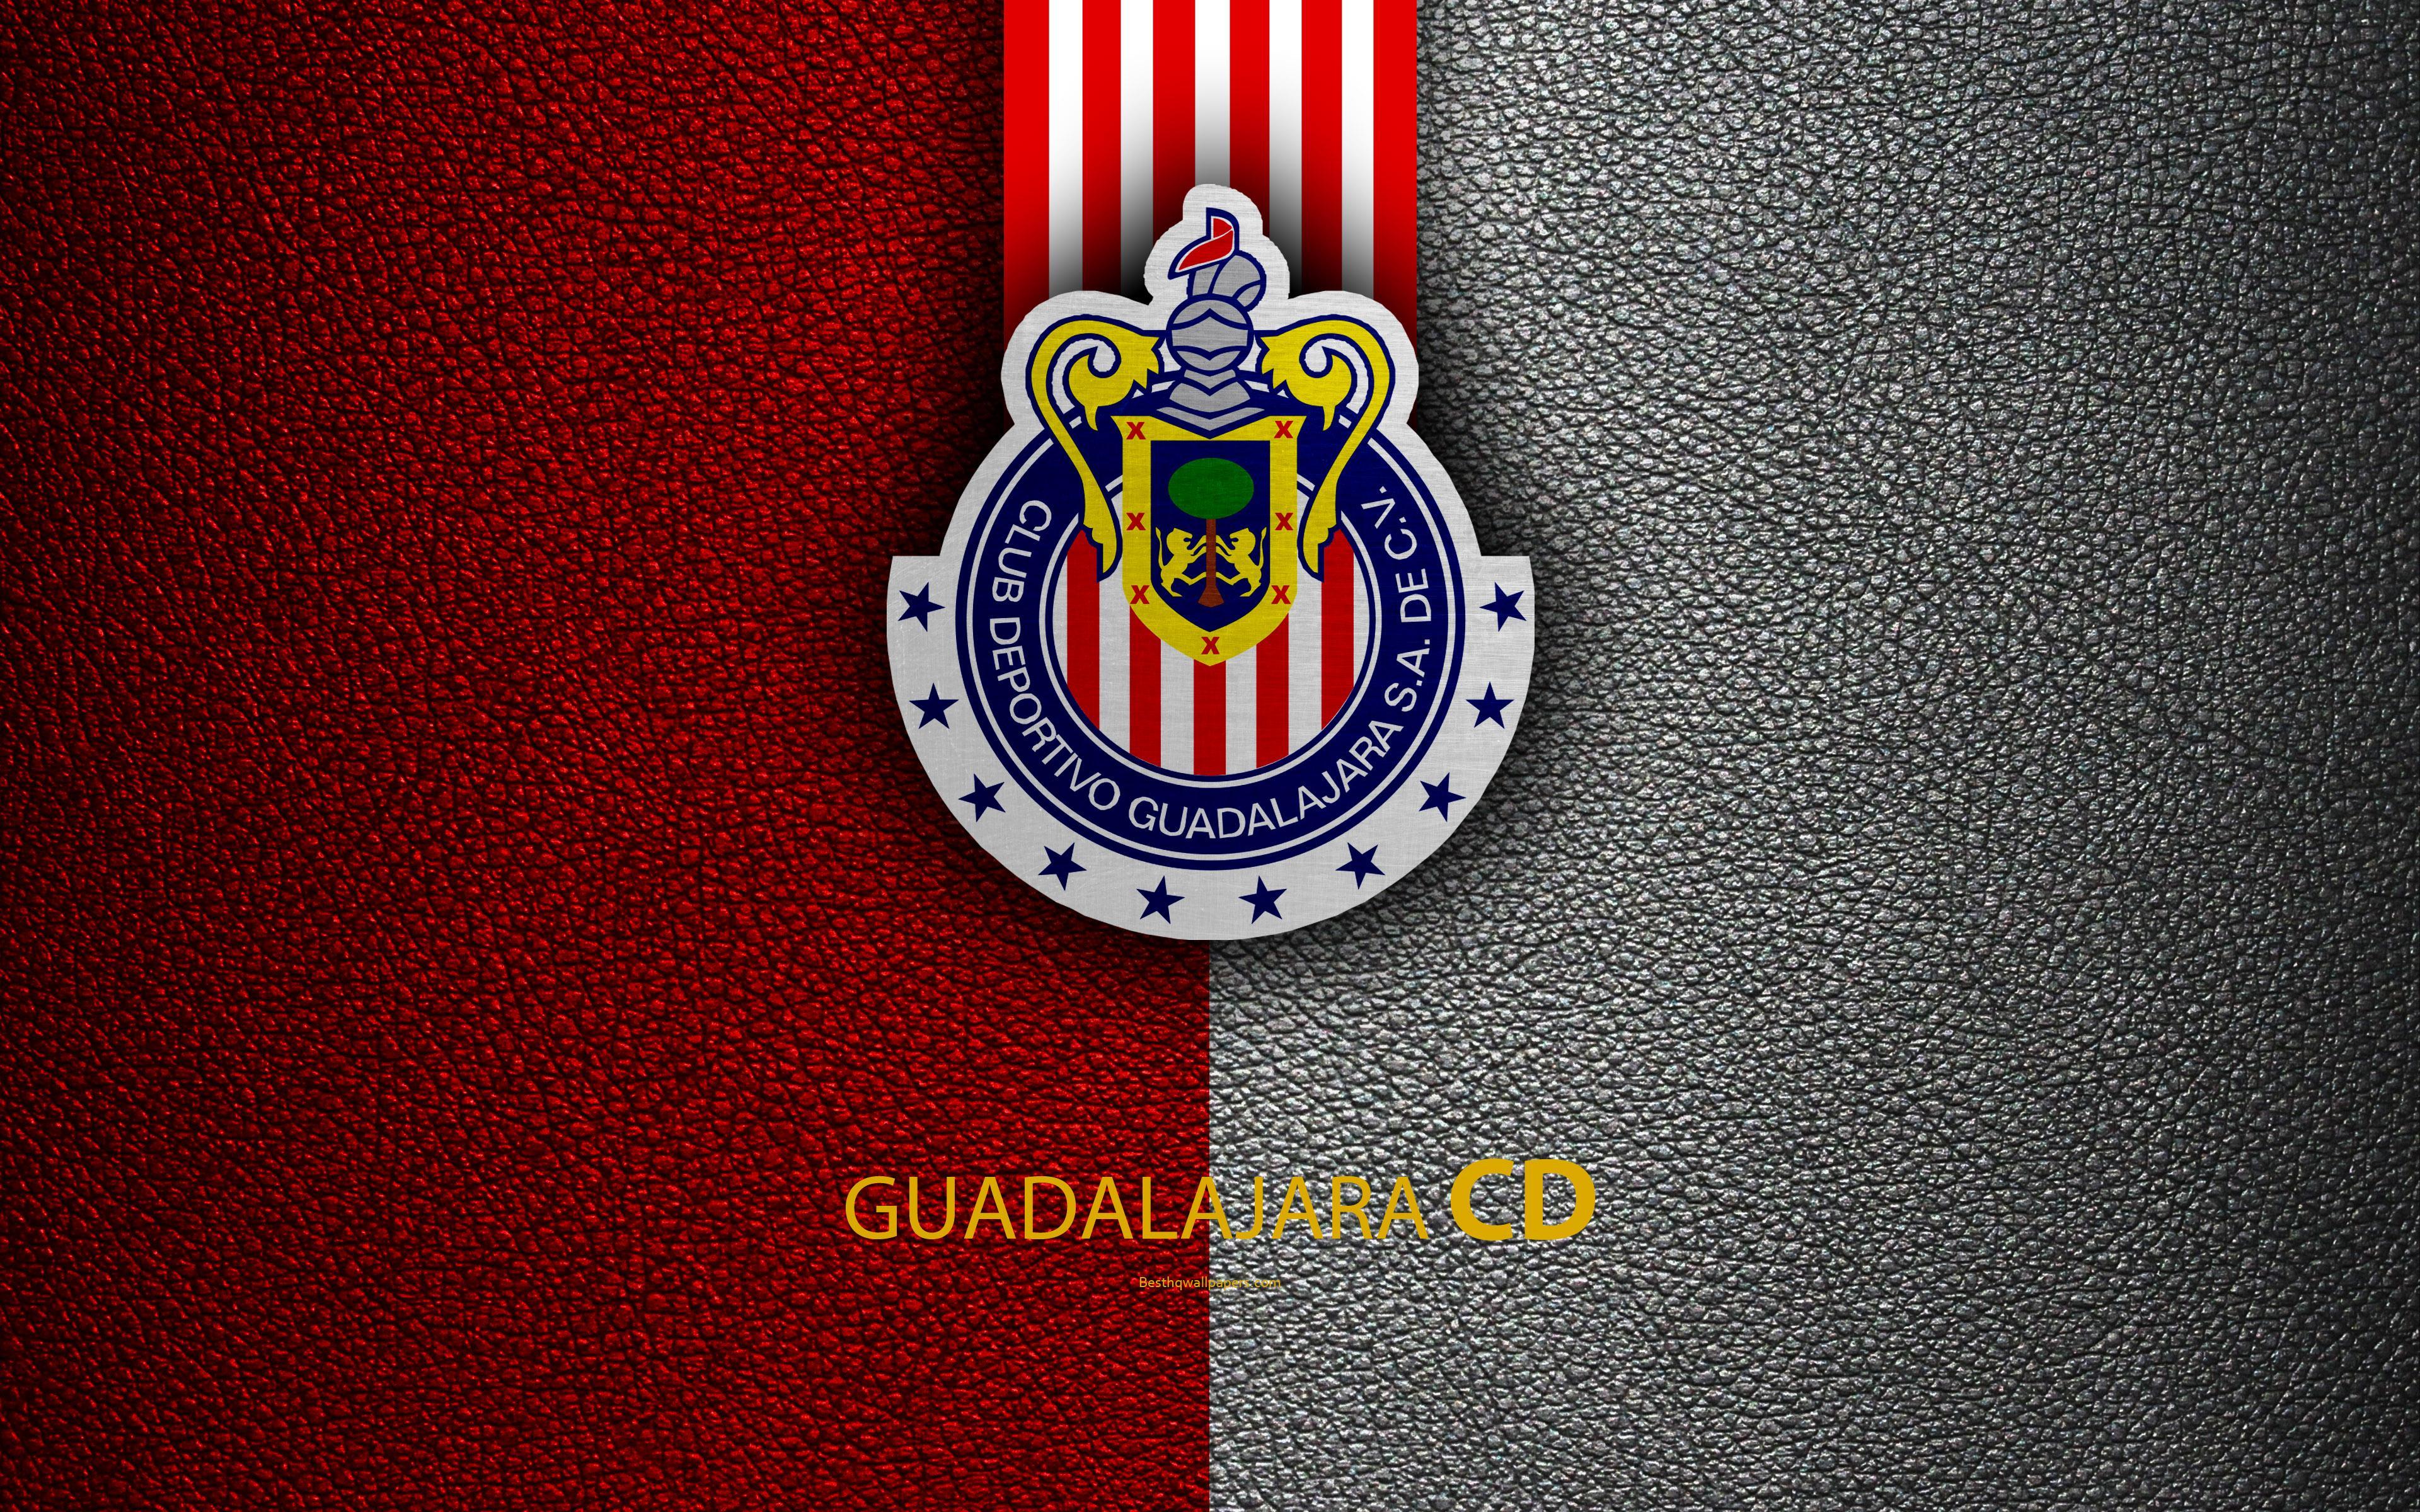 Download wallpaper CD Guadalajara, Chivas, 4k, leather texture